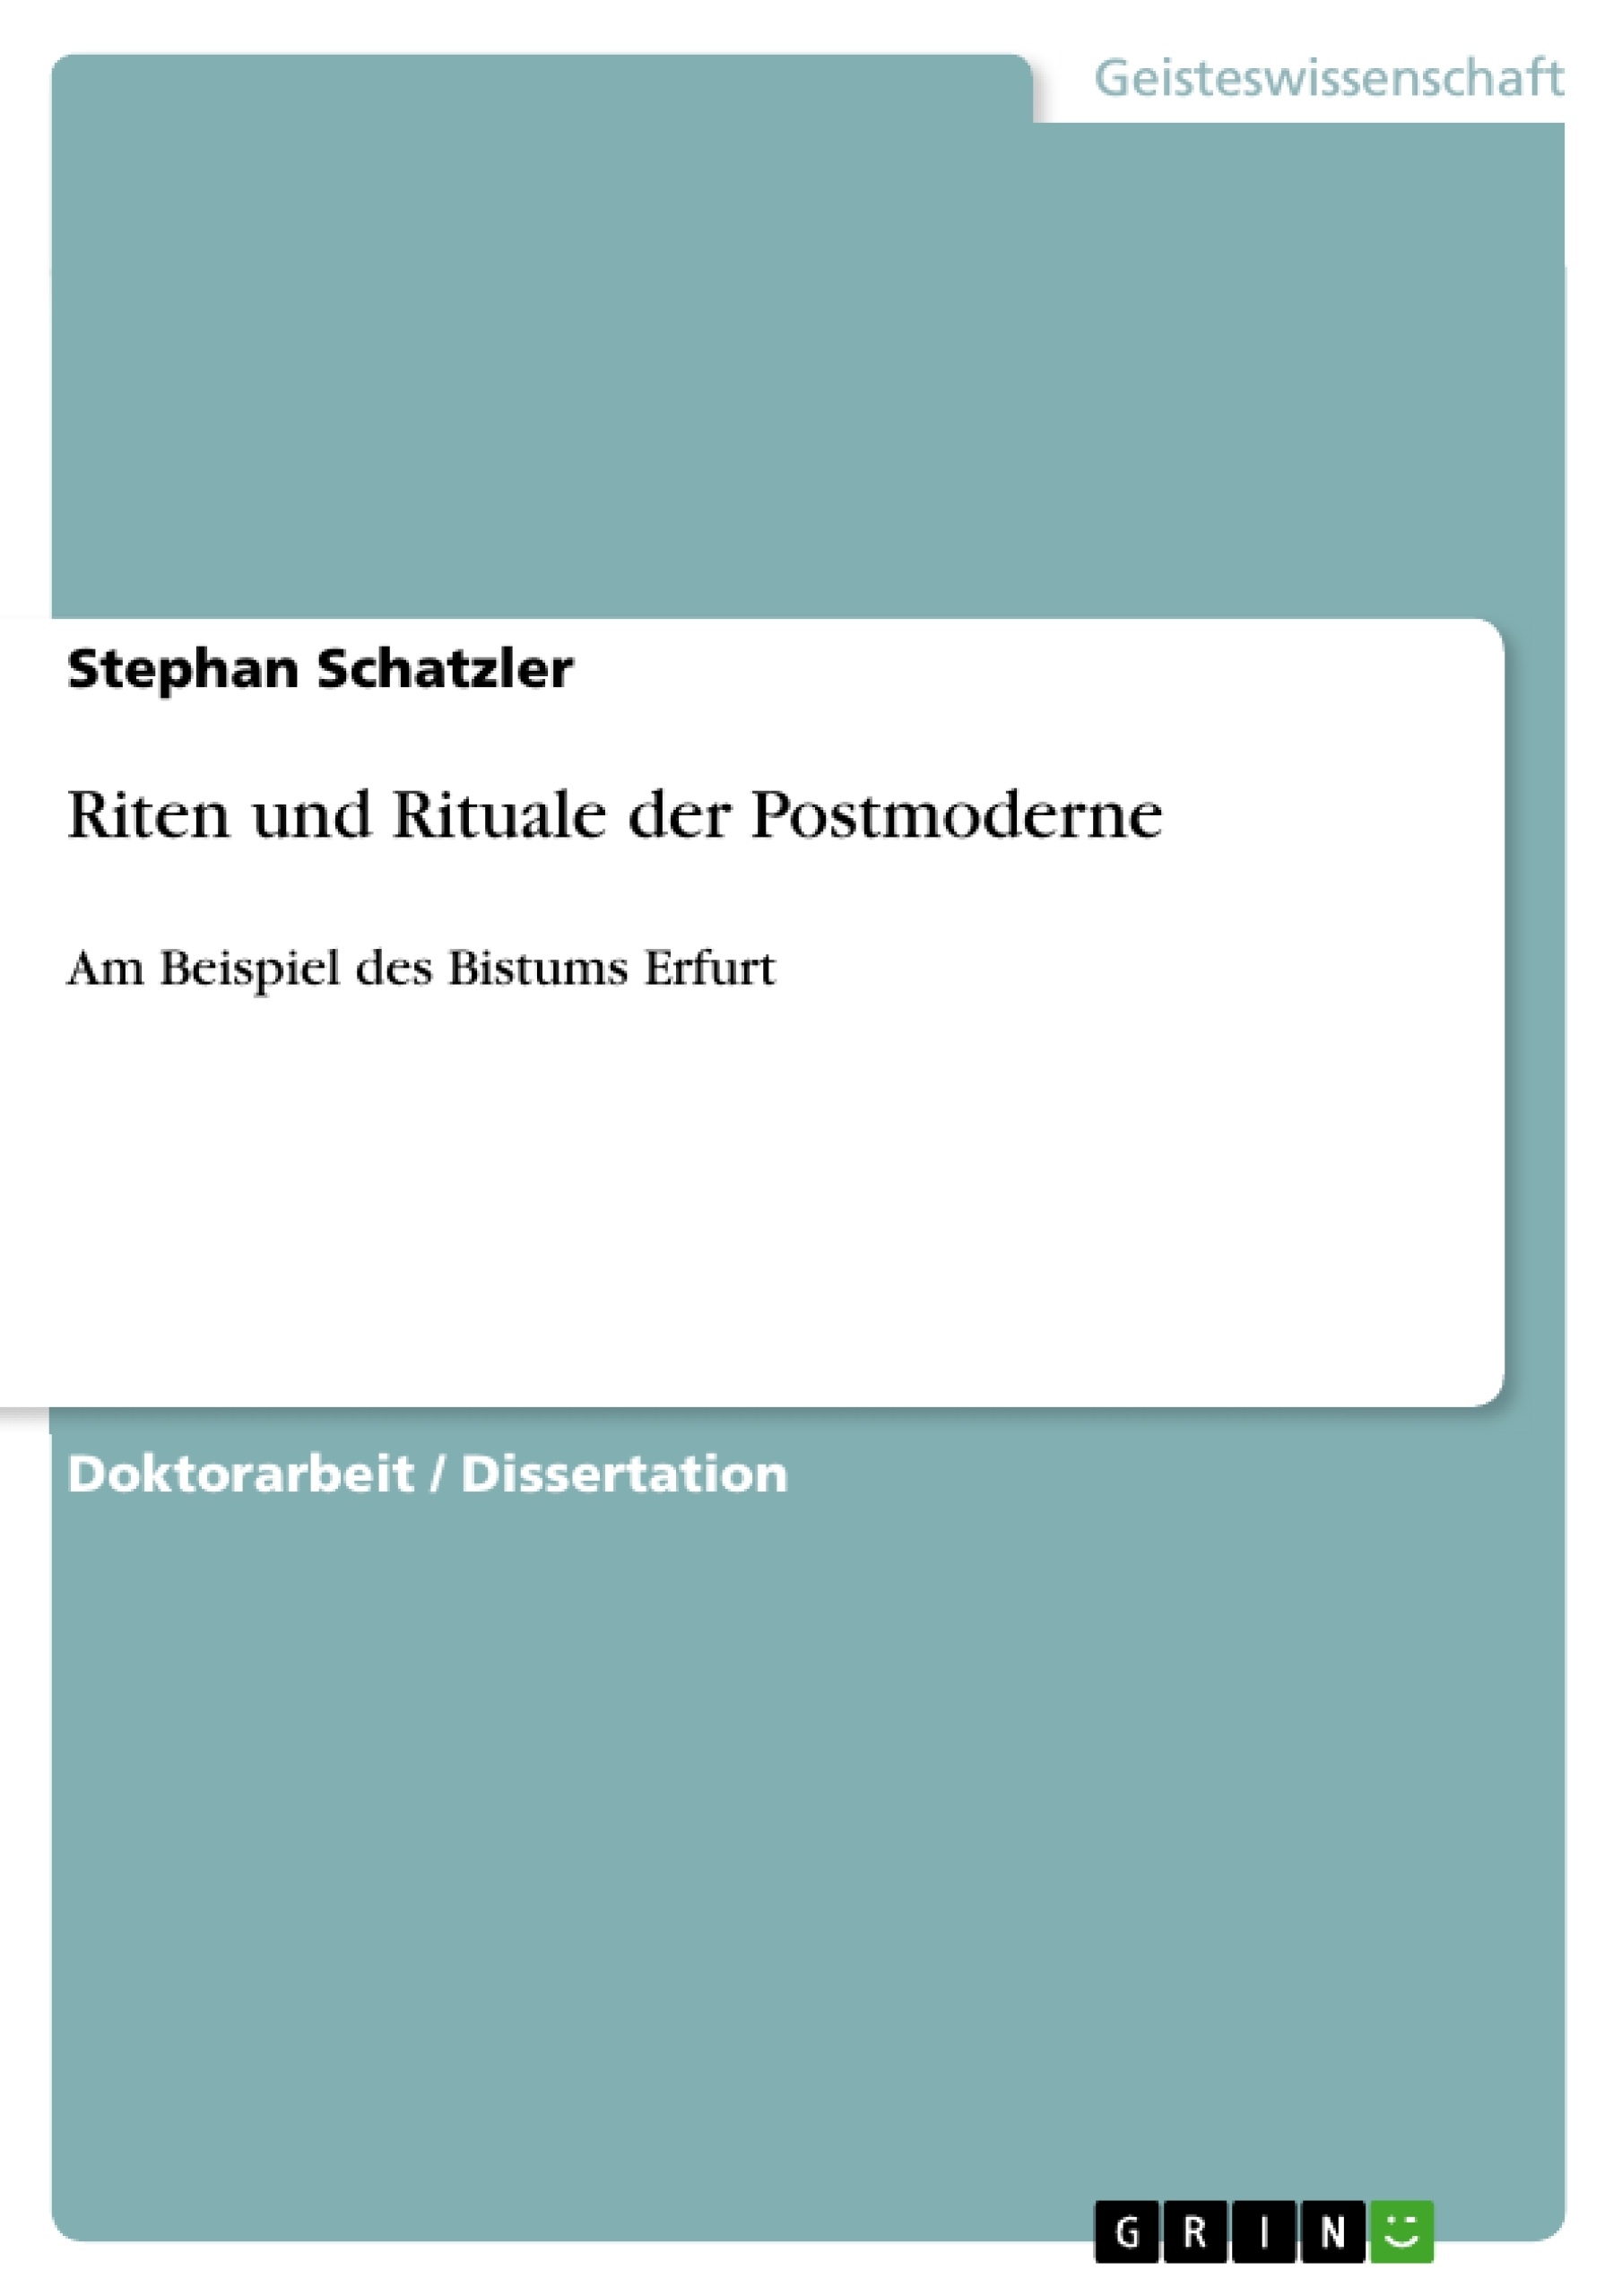 Titre: Riten und Rituale der Postmoderne